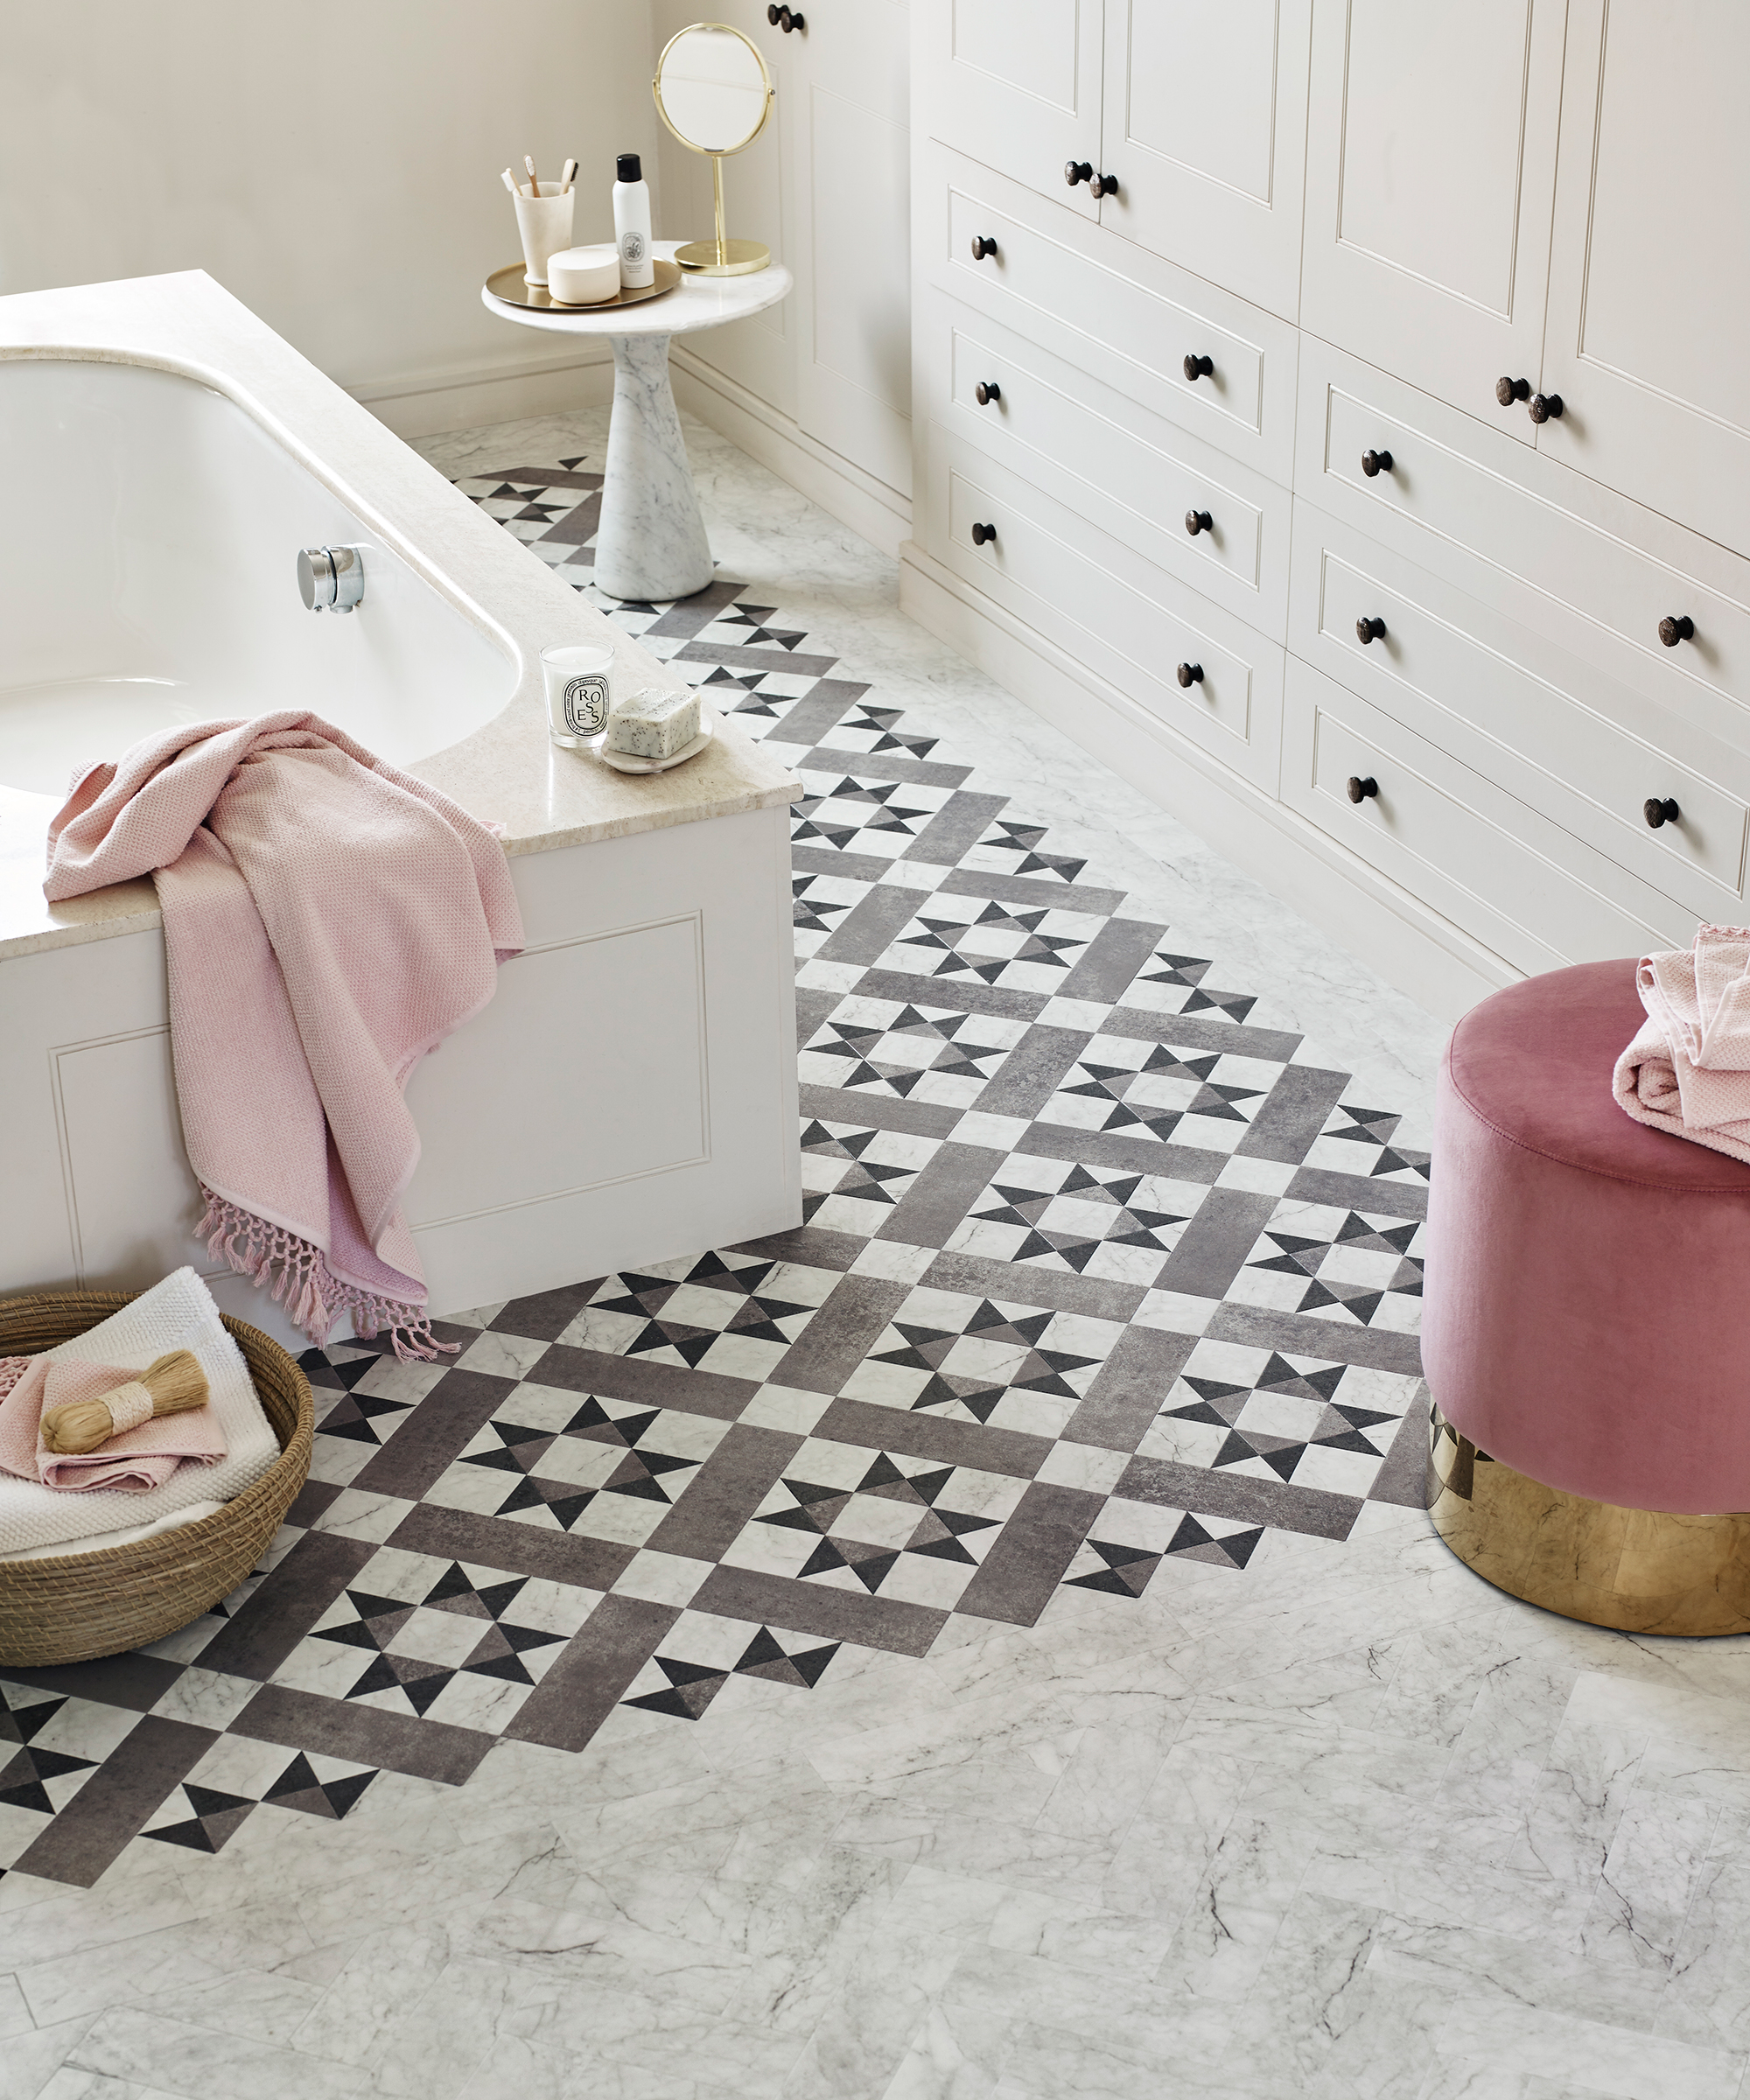 Gray Bathroom Tile Ideas 10 Ways To, Bathroom Floor Ideas Tile